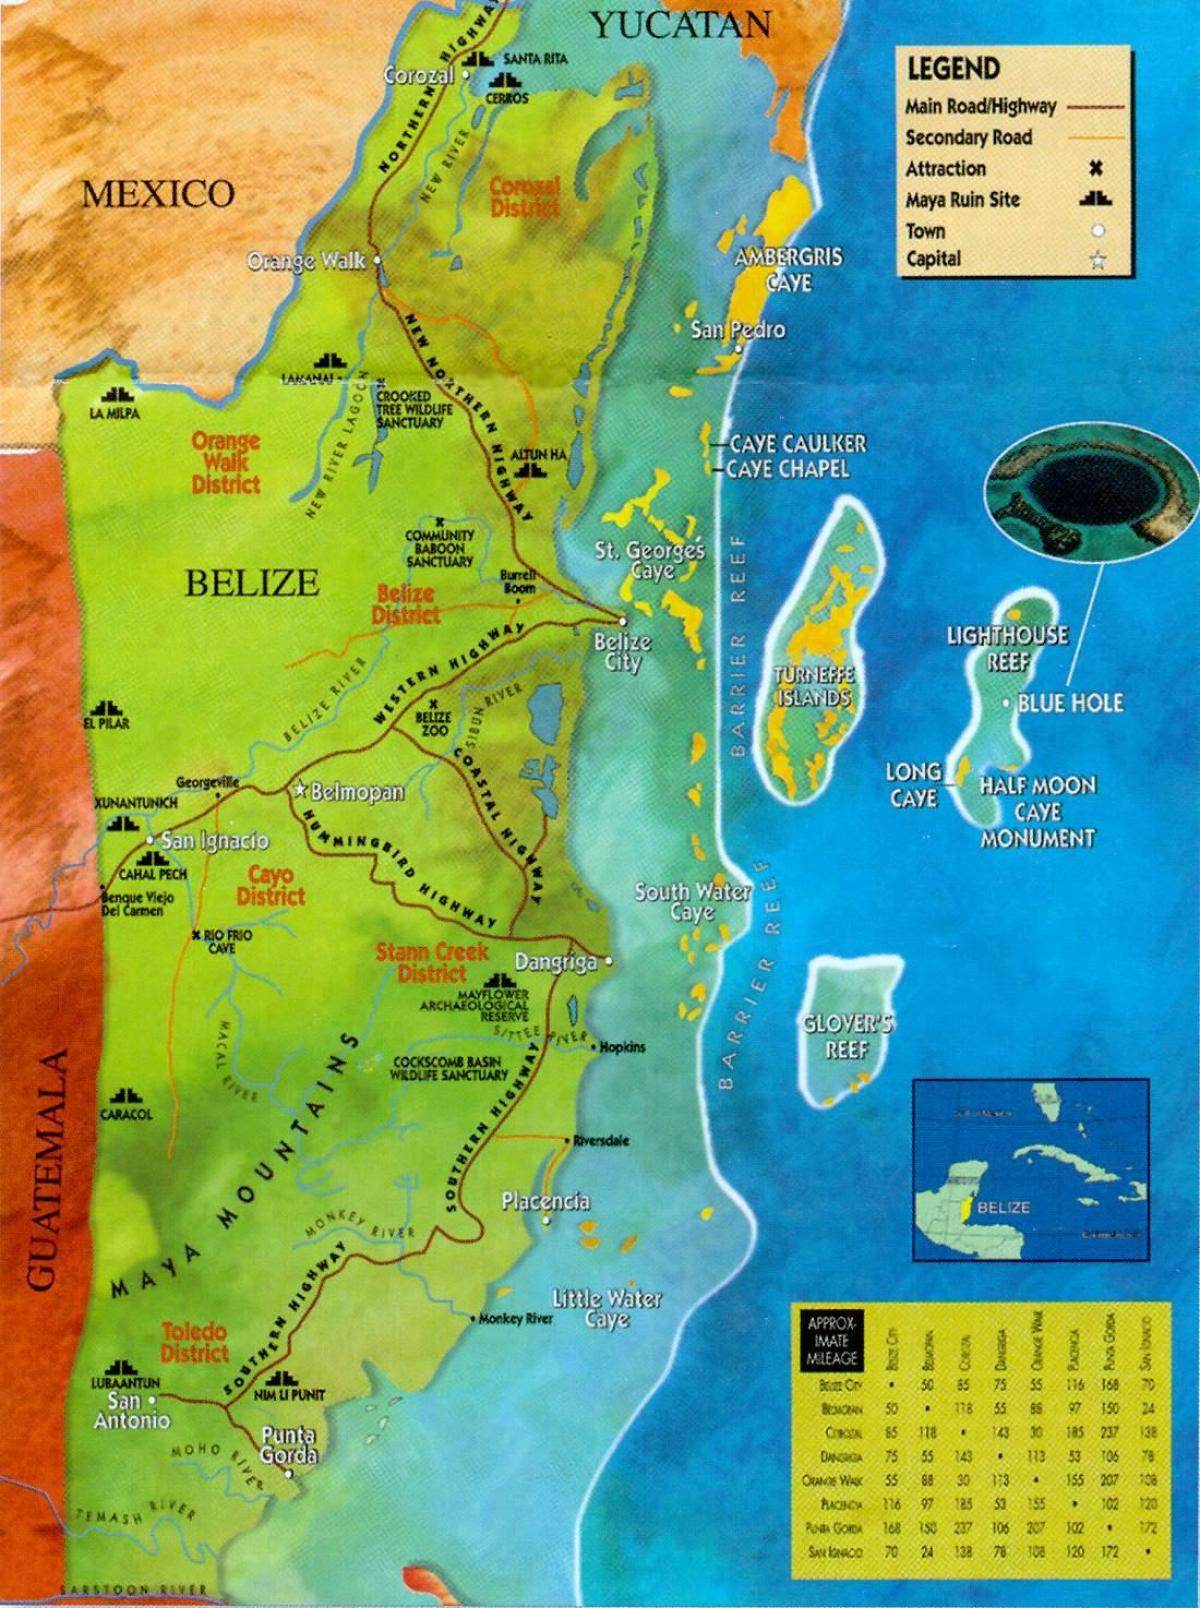 Belize ruinene kart